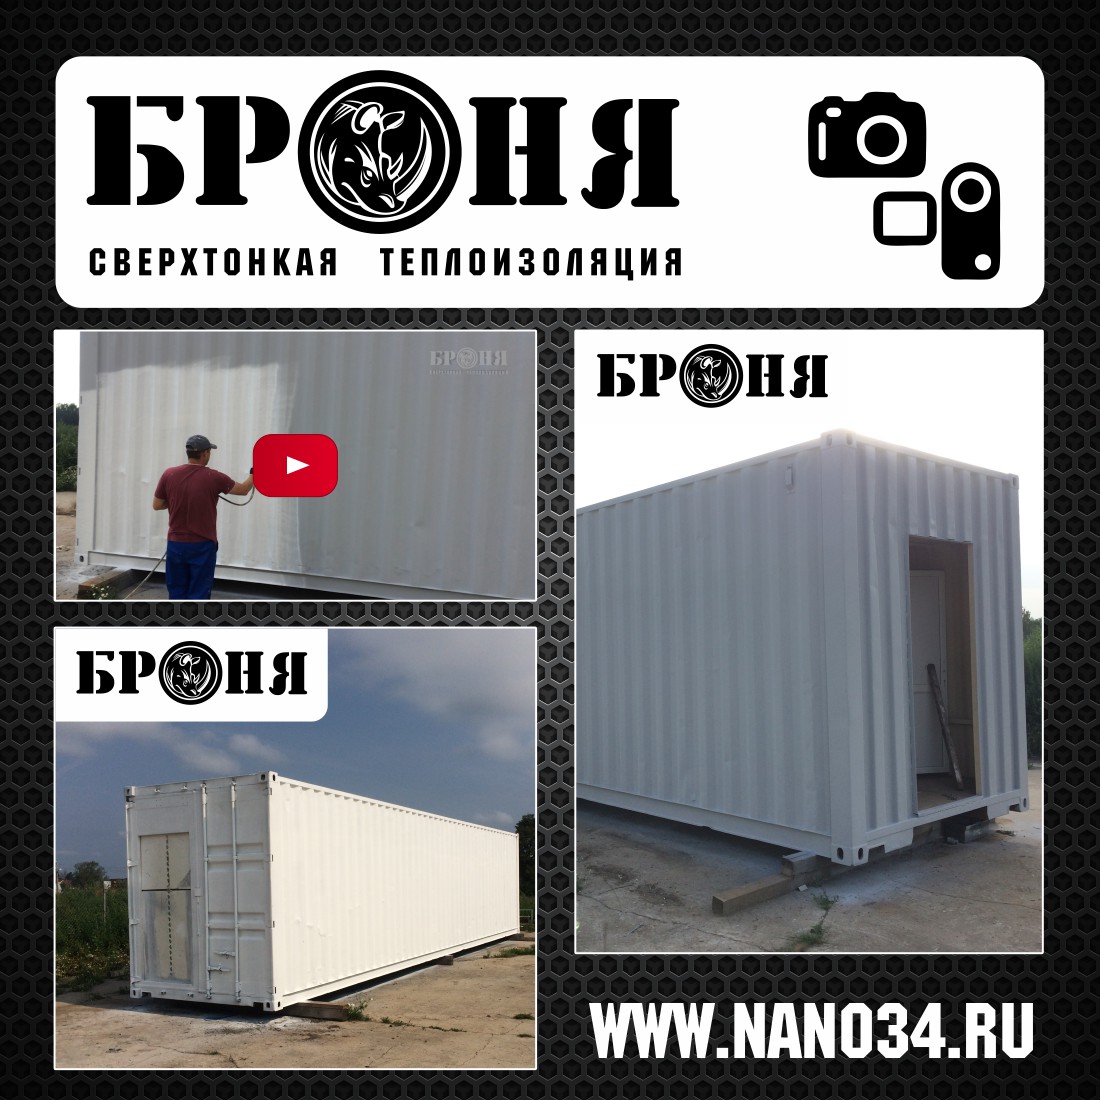 Московская область. Утепление модуля перепелиной фермы, выполненного из 40-футового контейнера